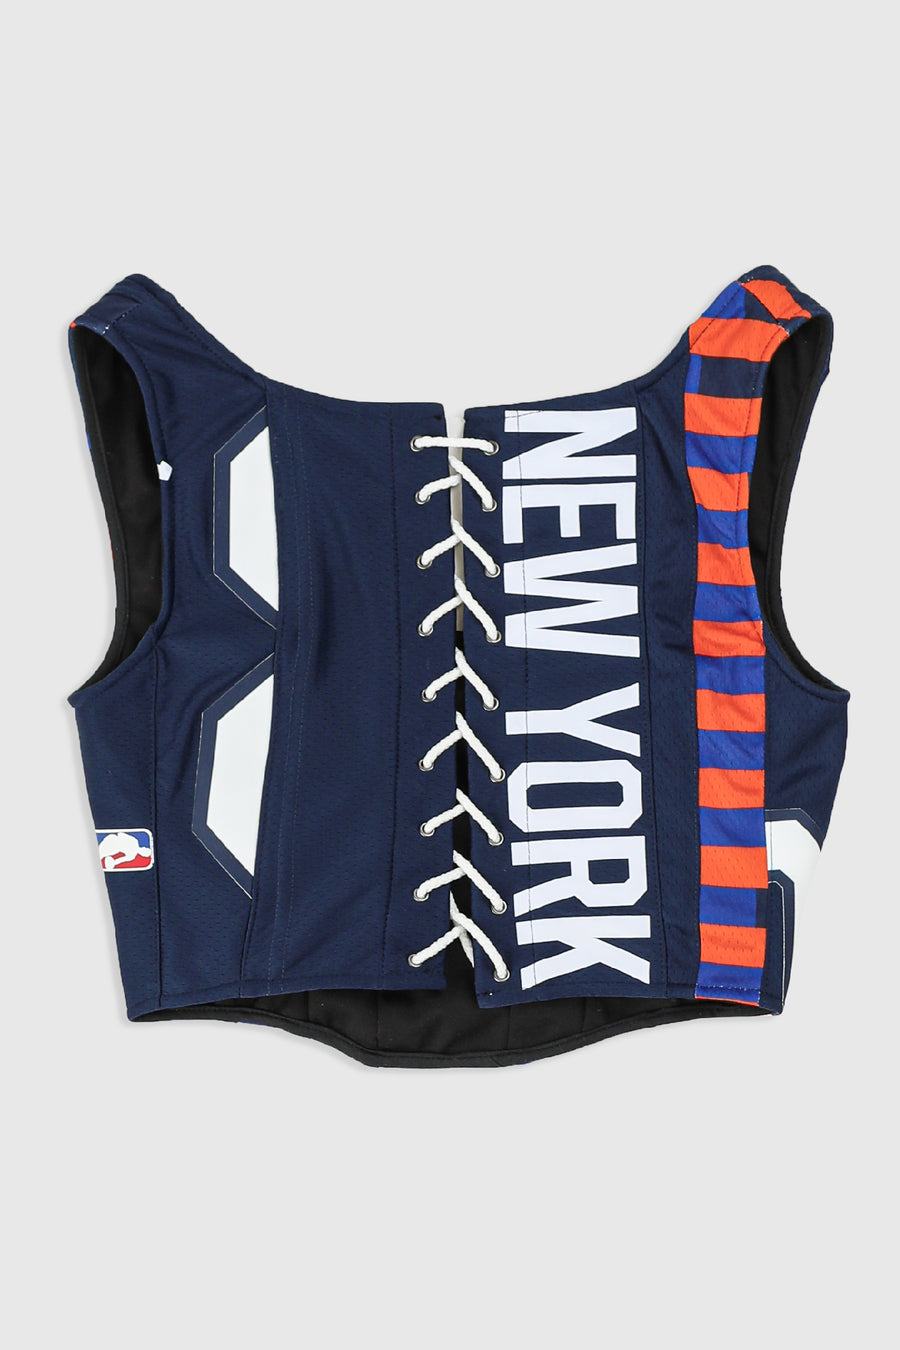 Rework NY Knicks NBA Corset - S